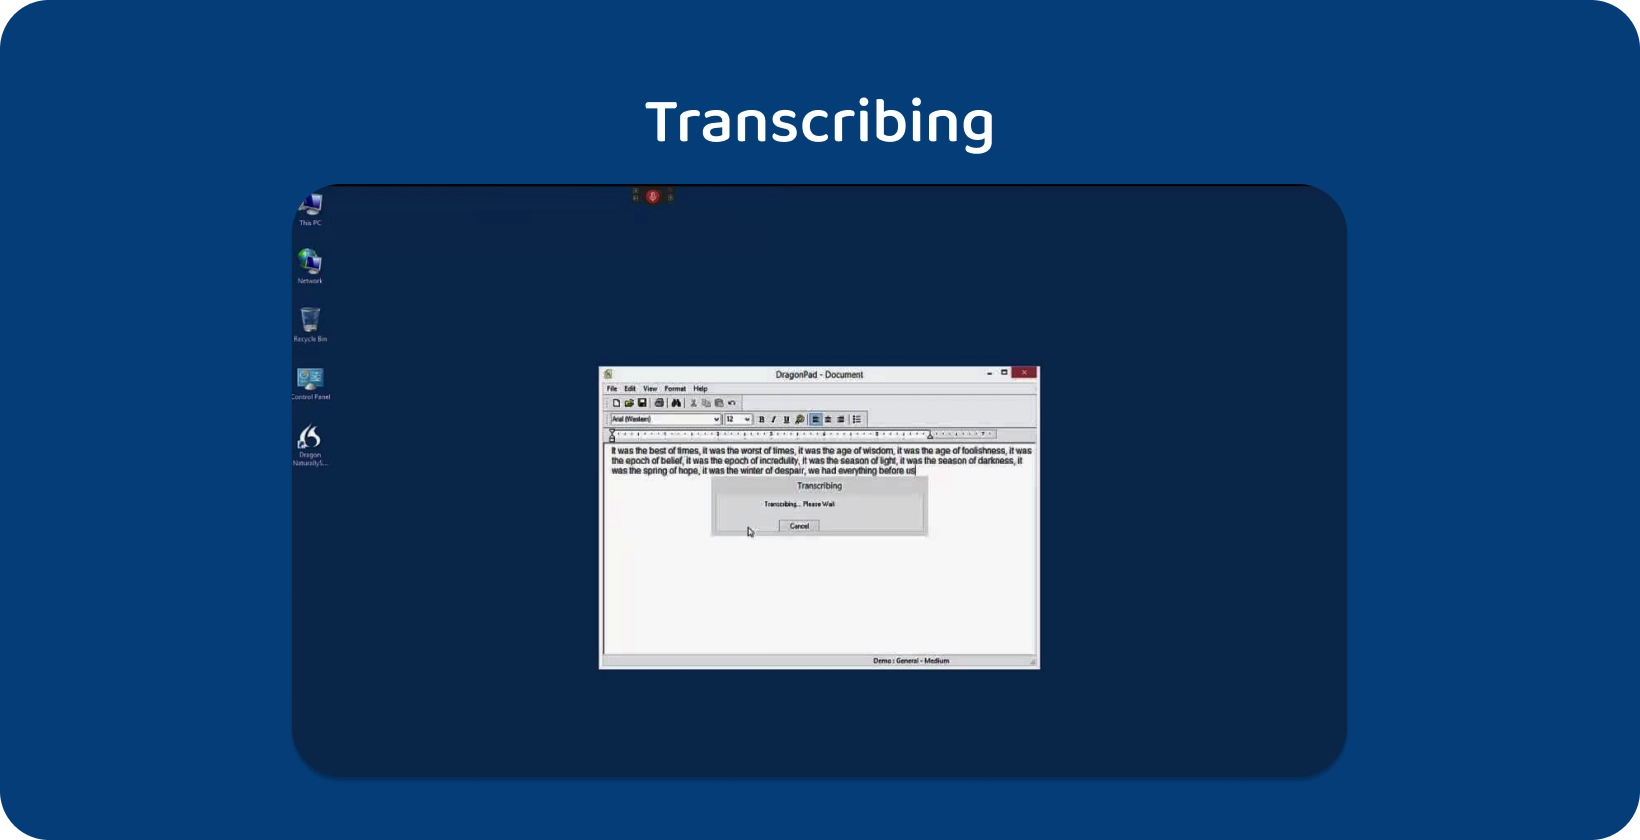 Trình soạn thảo văn bản Dragon NaturallySpeaking chủ động sao chép một cuộc phỏng vấn đang diễn ra được hiển thị trên màn hình máy tính để bàn.